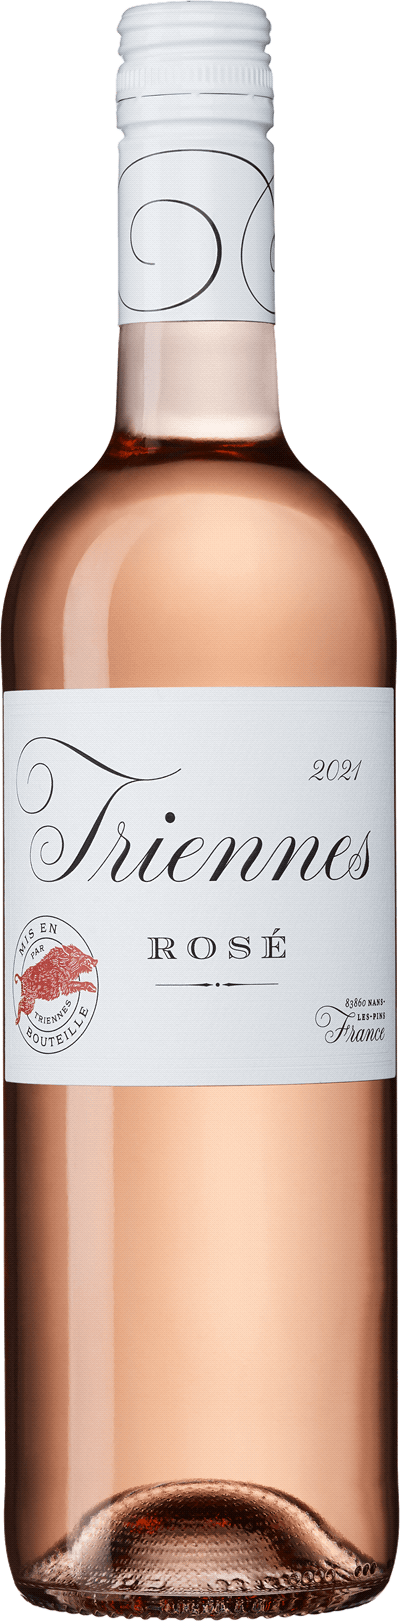 Triennes Rosé